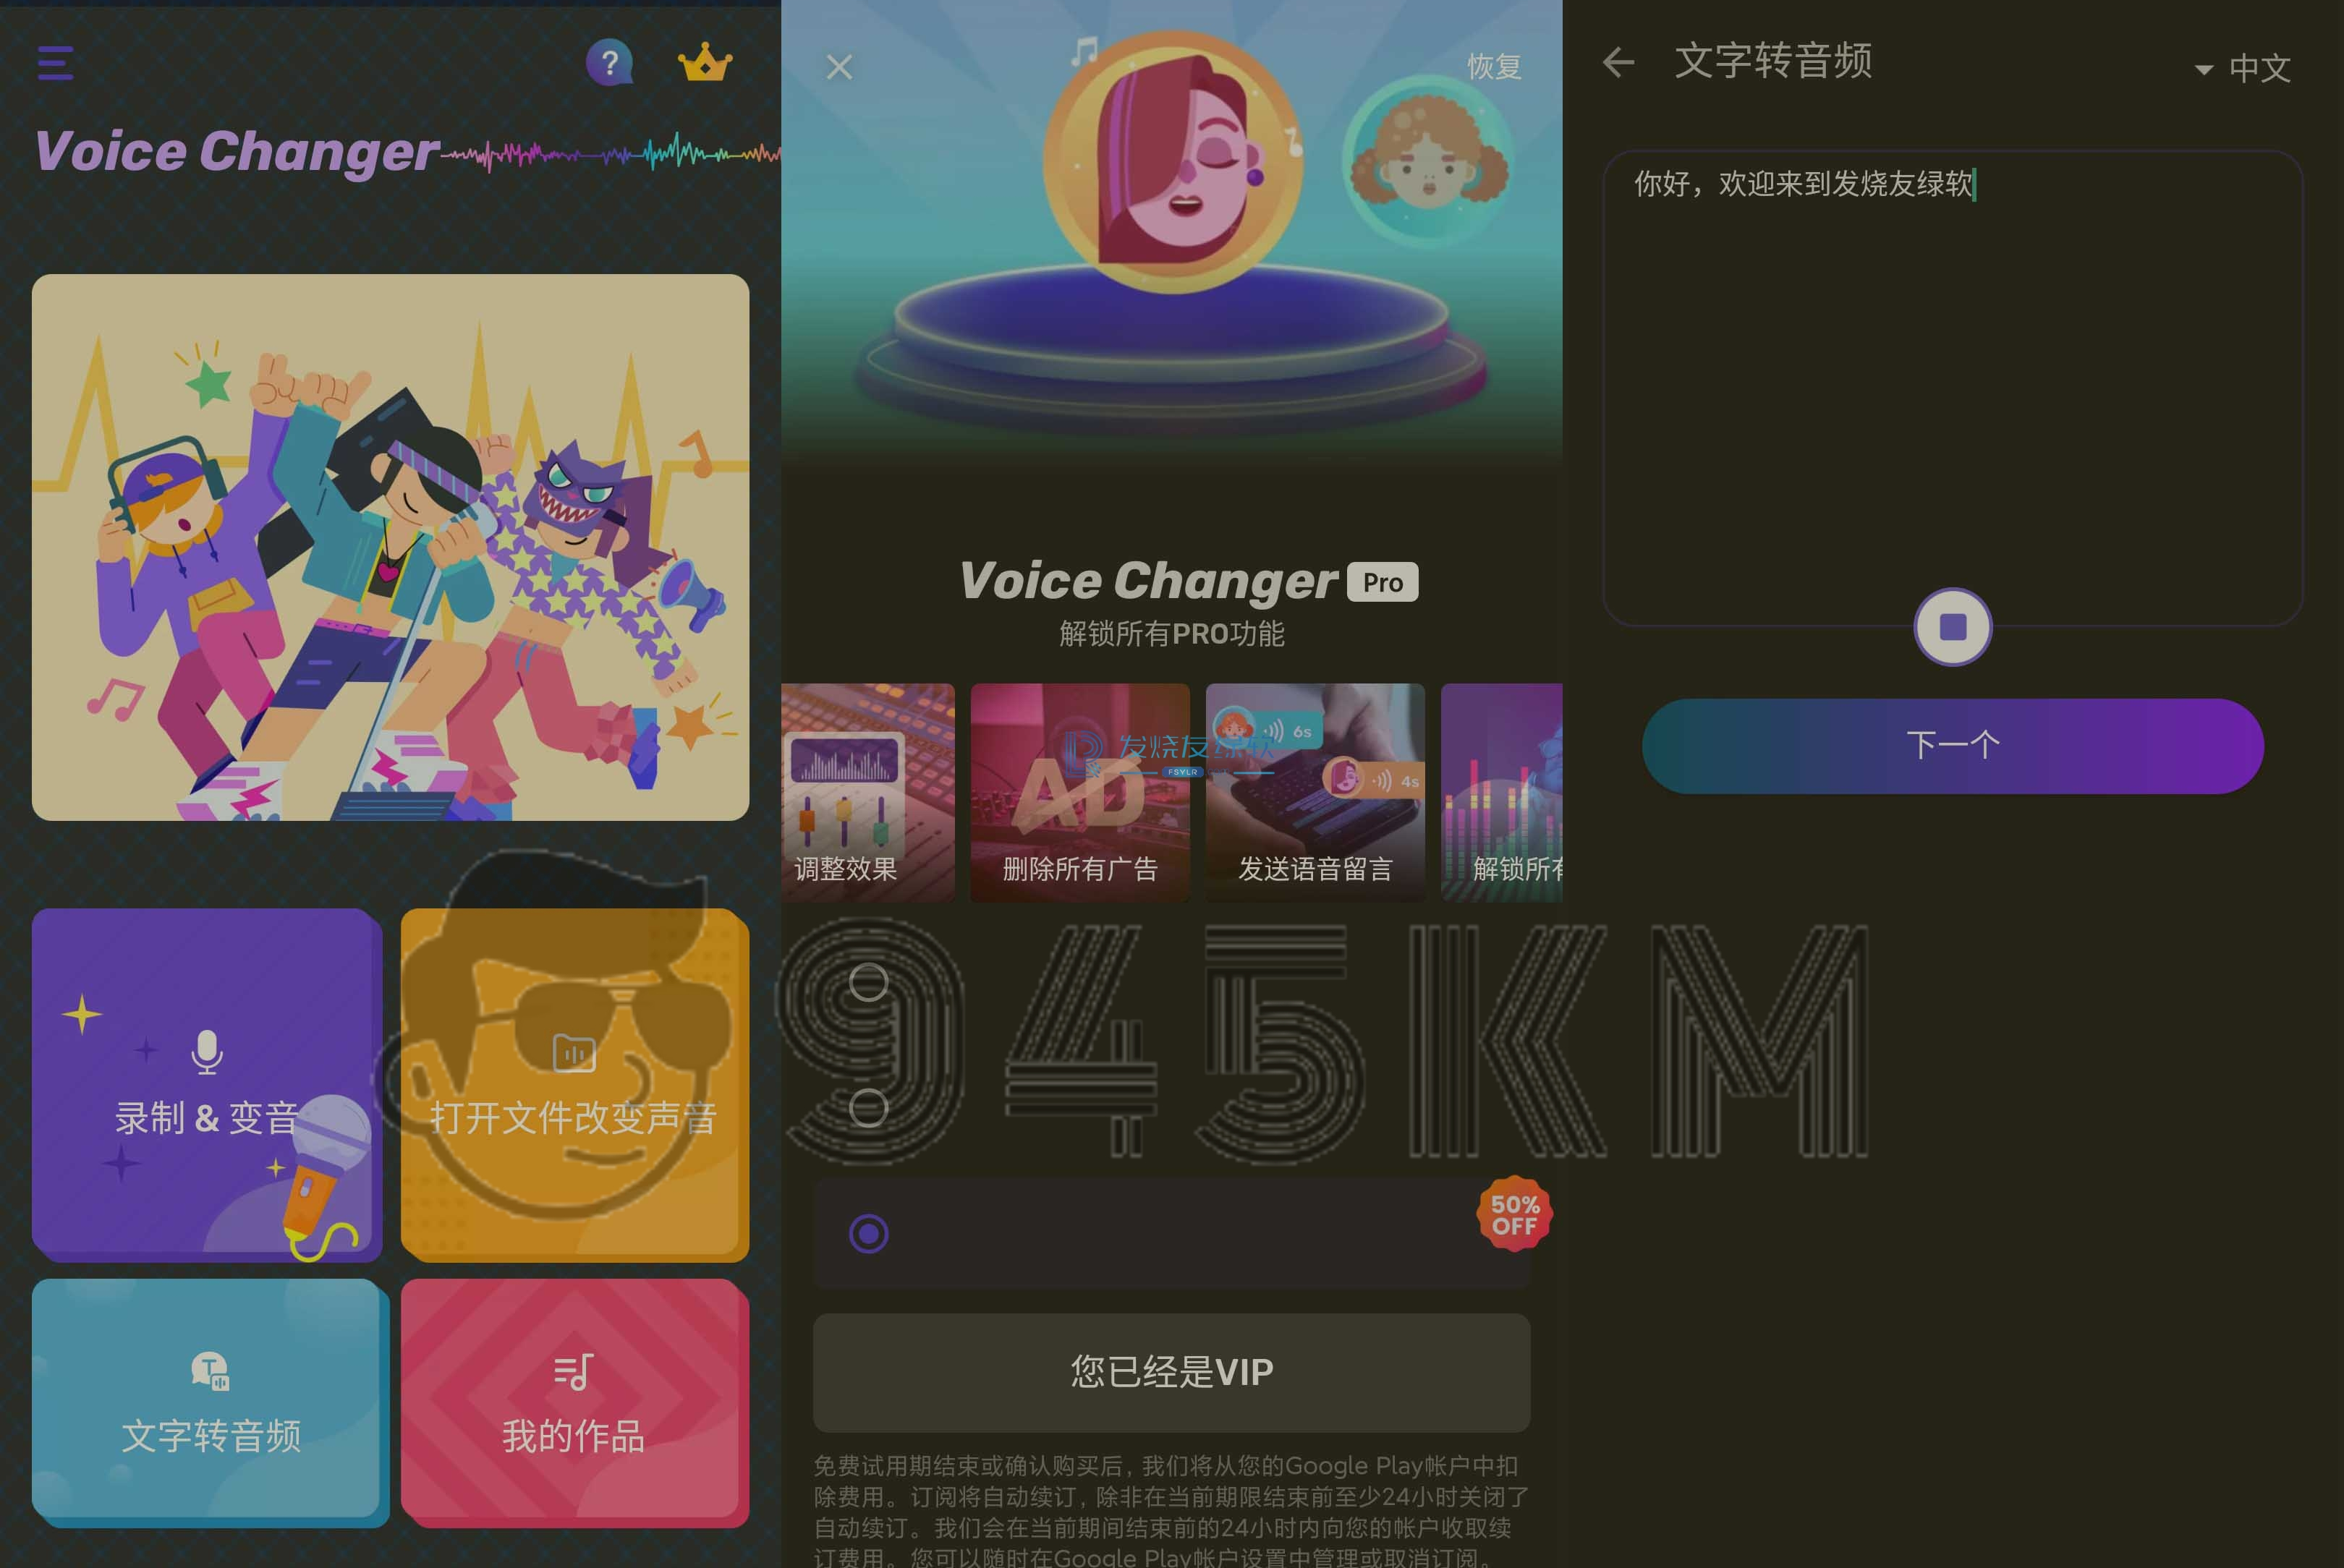 【Android】Voice Changer v1.9.403 | 手机变声器、解锁专业版插图